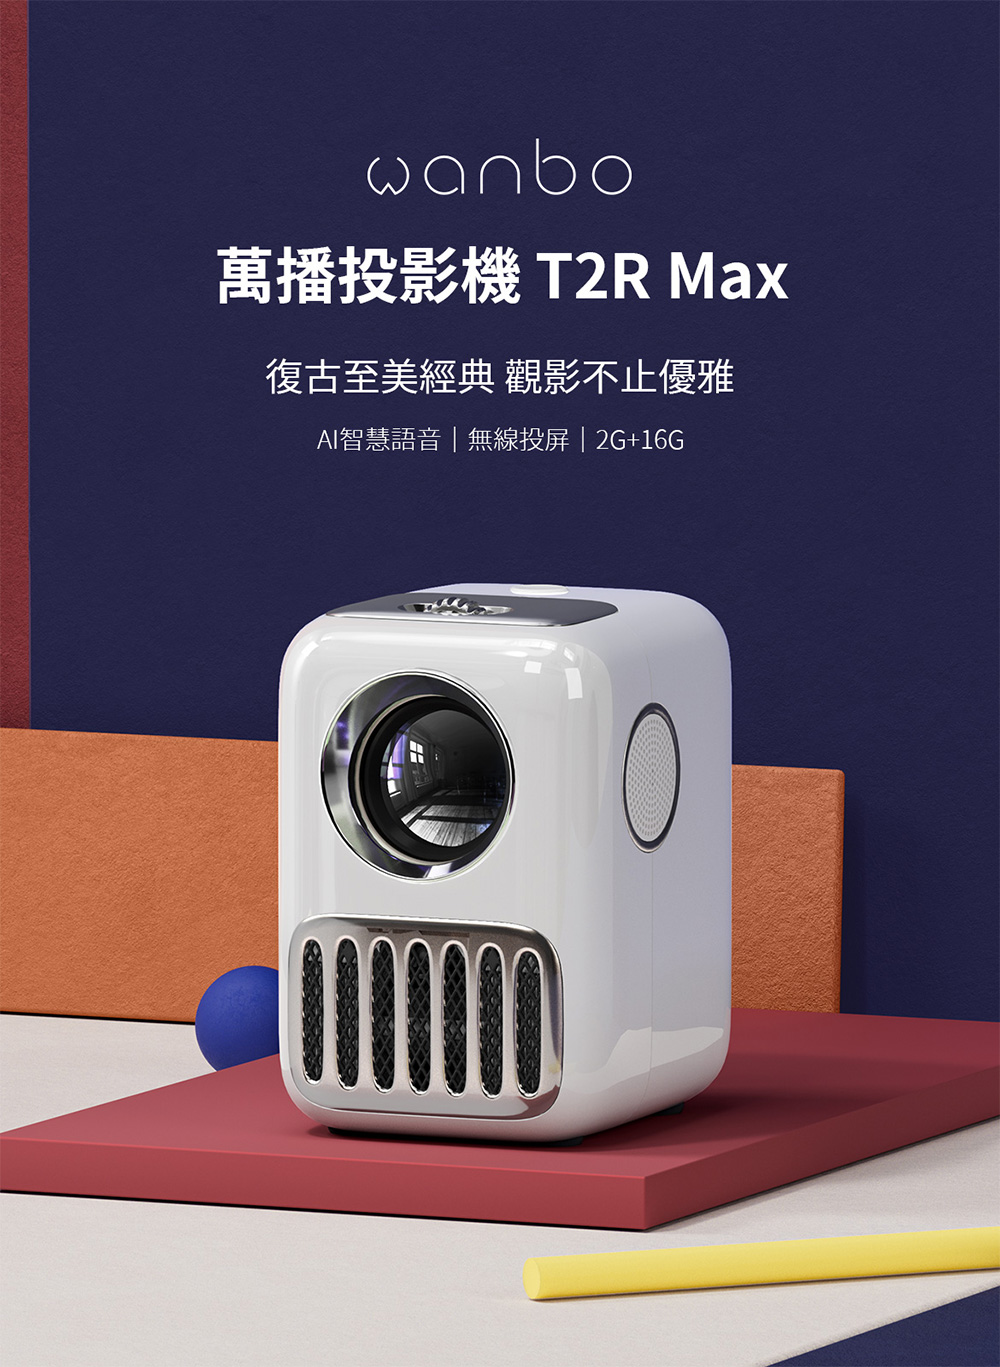 【萬播 Wanbo】T2R Max攜帶式智慧投影機 微型投影機 1080P 